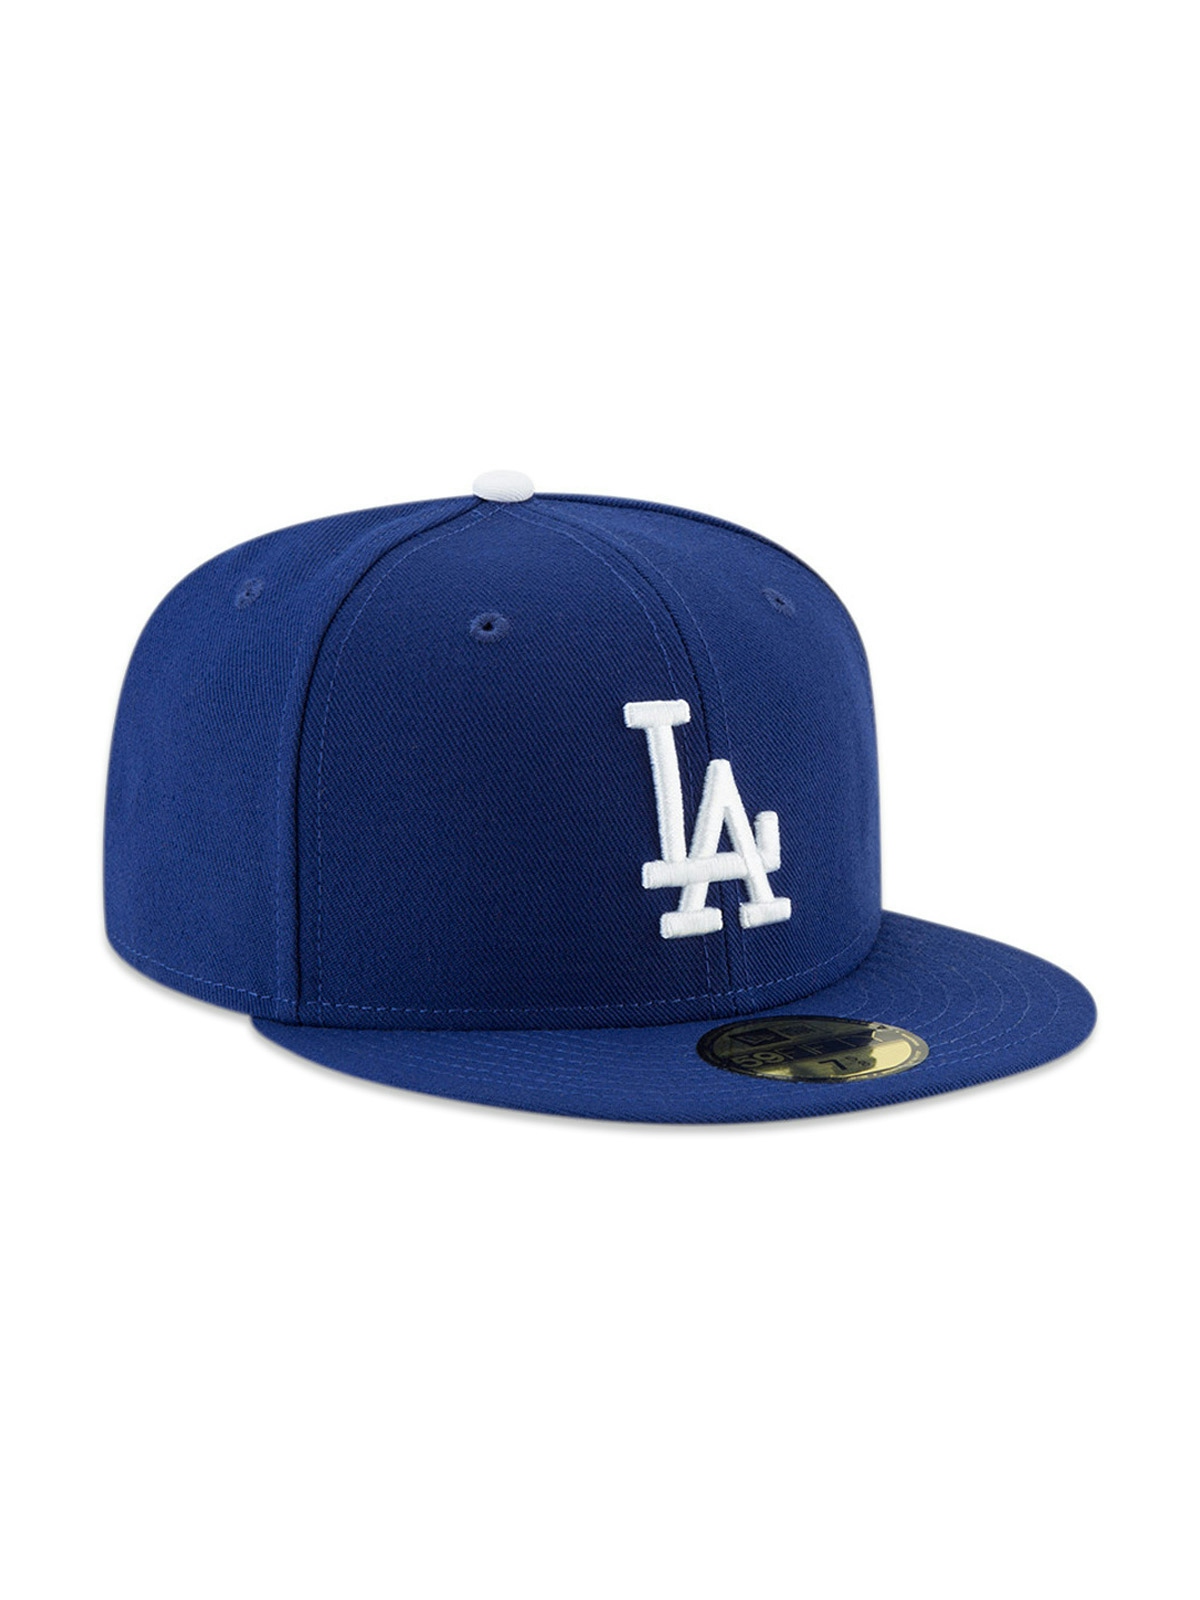 New Era Mlb Ac Perf 5950 Los Angeles Dodgers Caps Blue 1